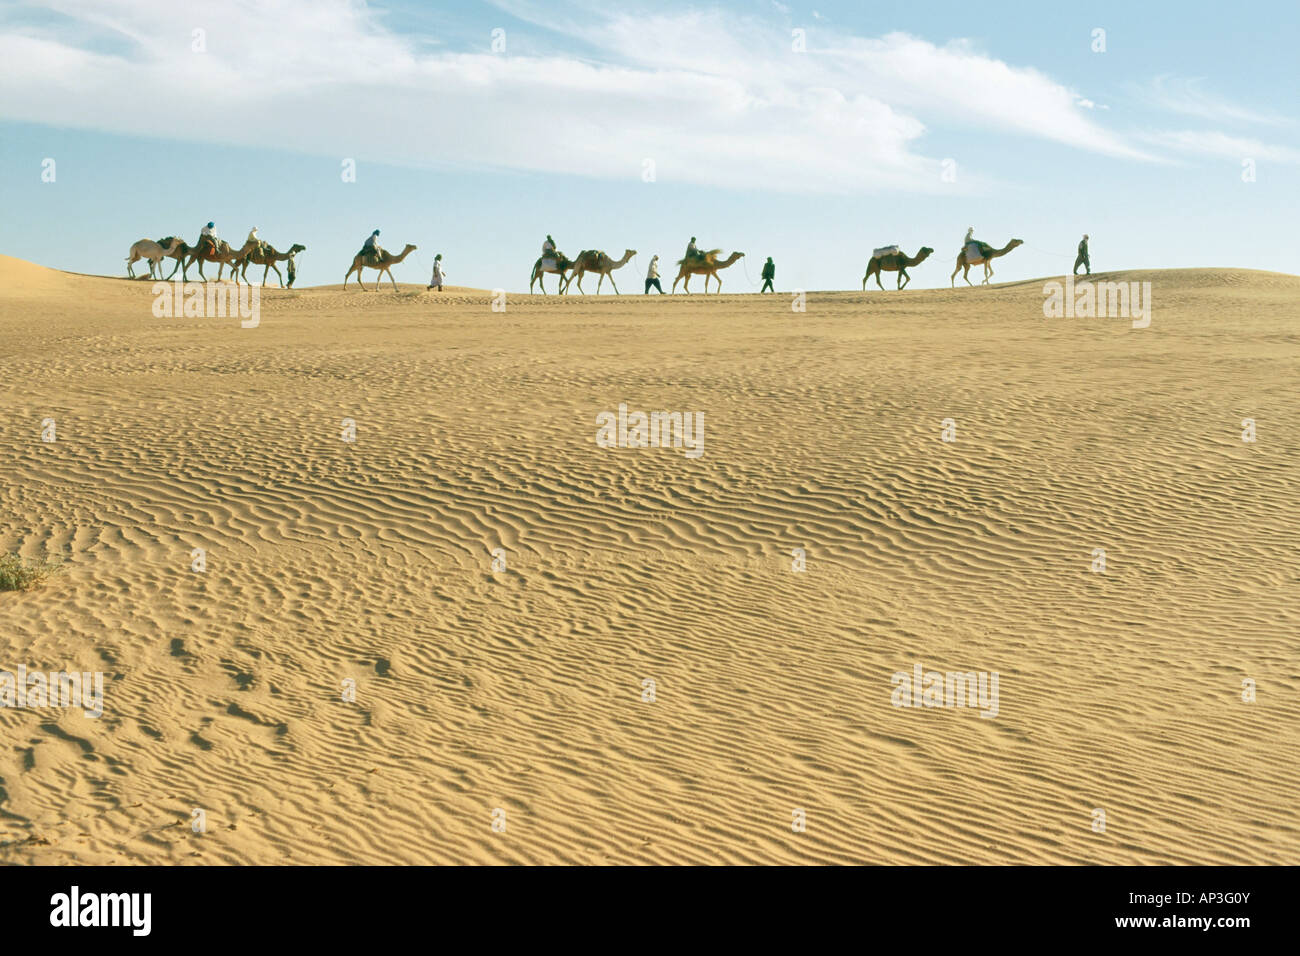 Wohnwagen, Menschen und Kamele am Horizont, Grand Erg Occidental, Sahara, Algerien, Afrika Stockfoto